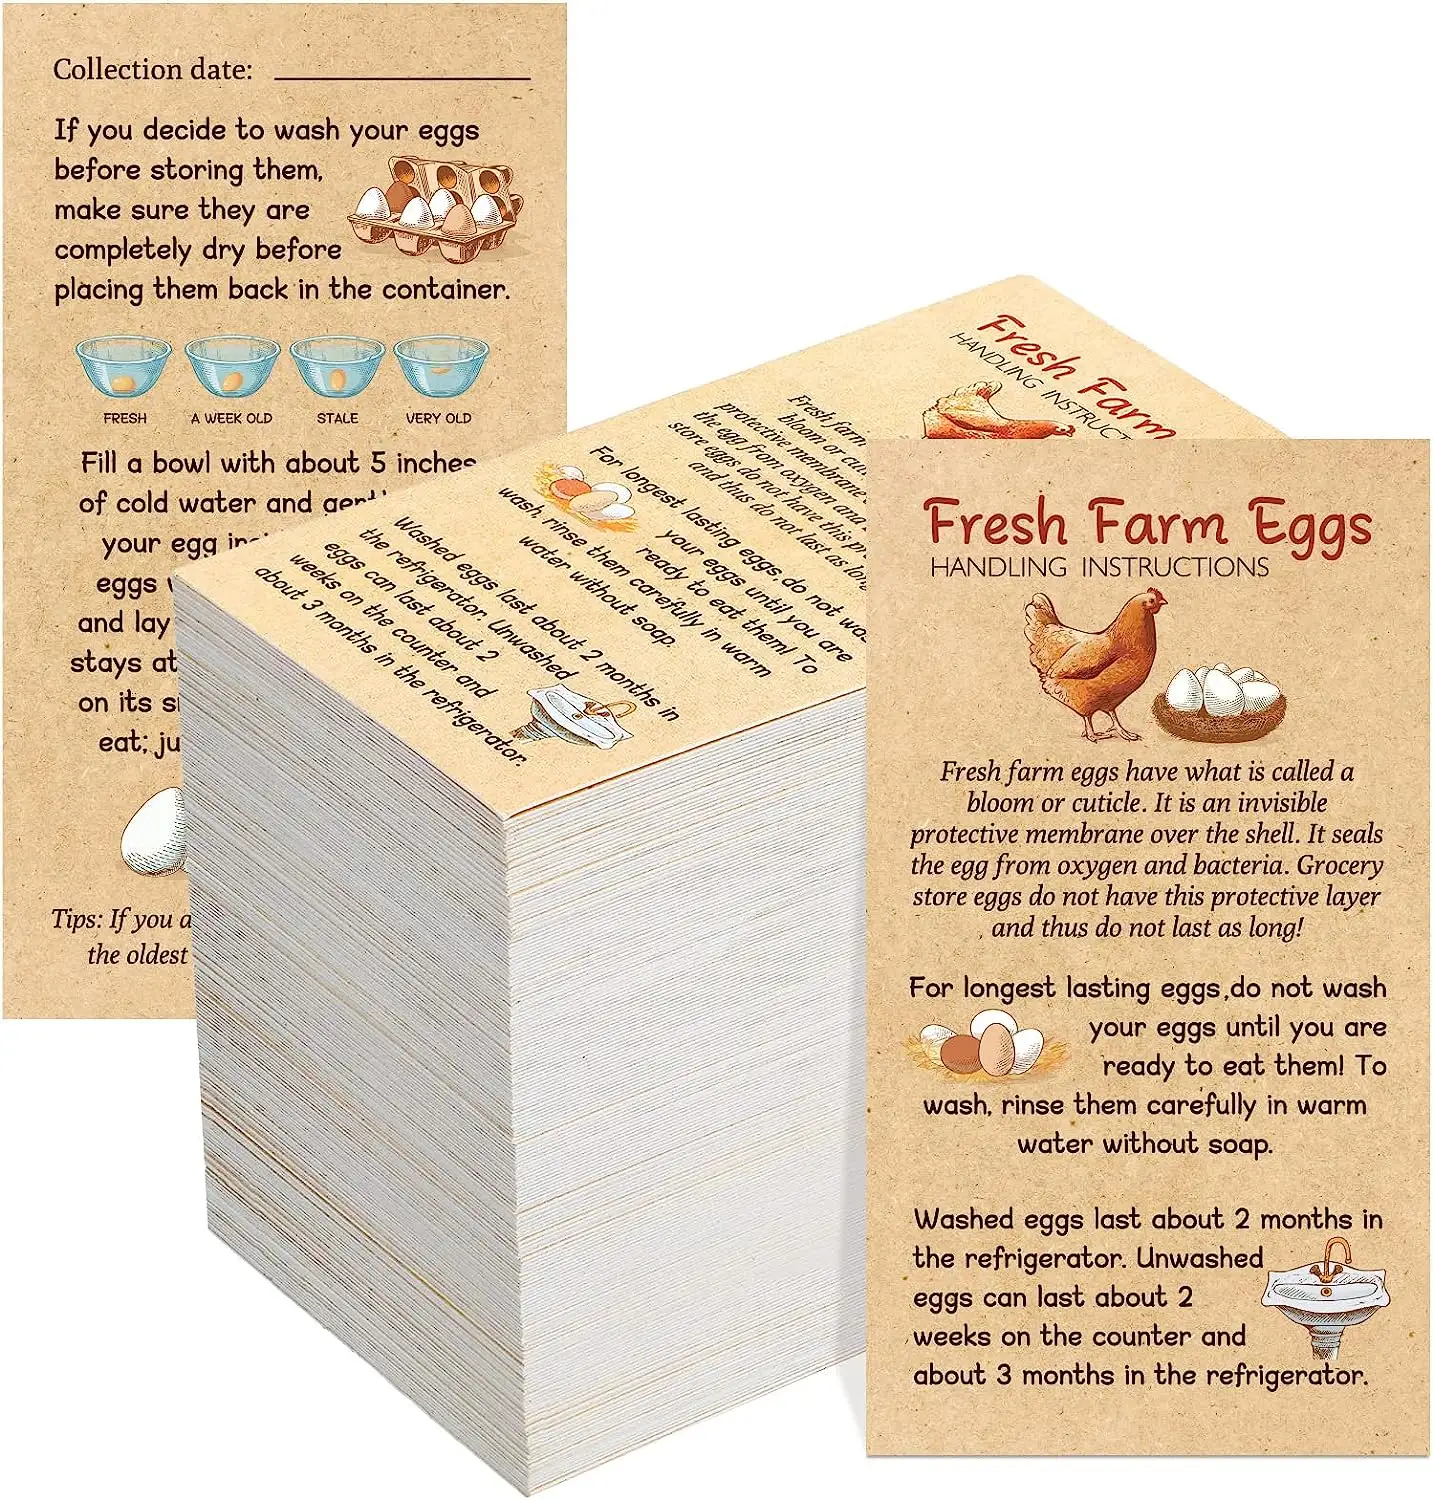 Инструкции по обработке свежих фермерских яиц, дизайн яиц, визитная карточка, штампы для карт, этикетки для аксессуаров, простой стиль